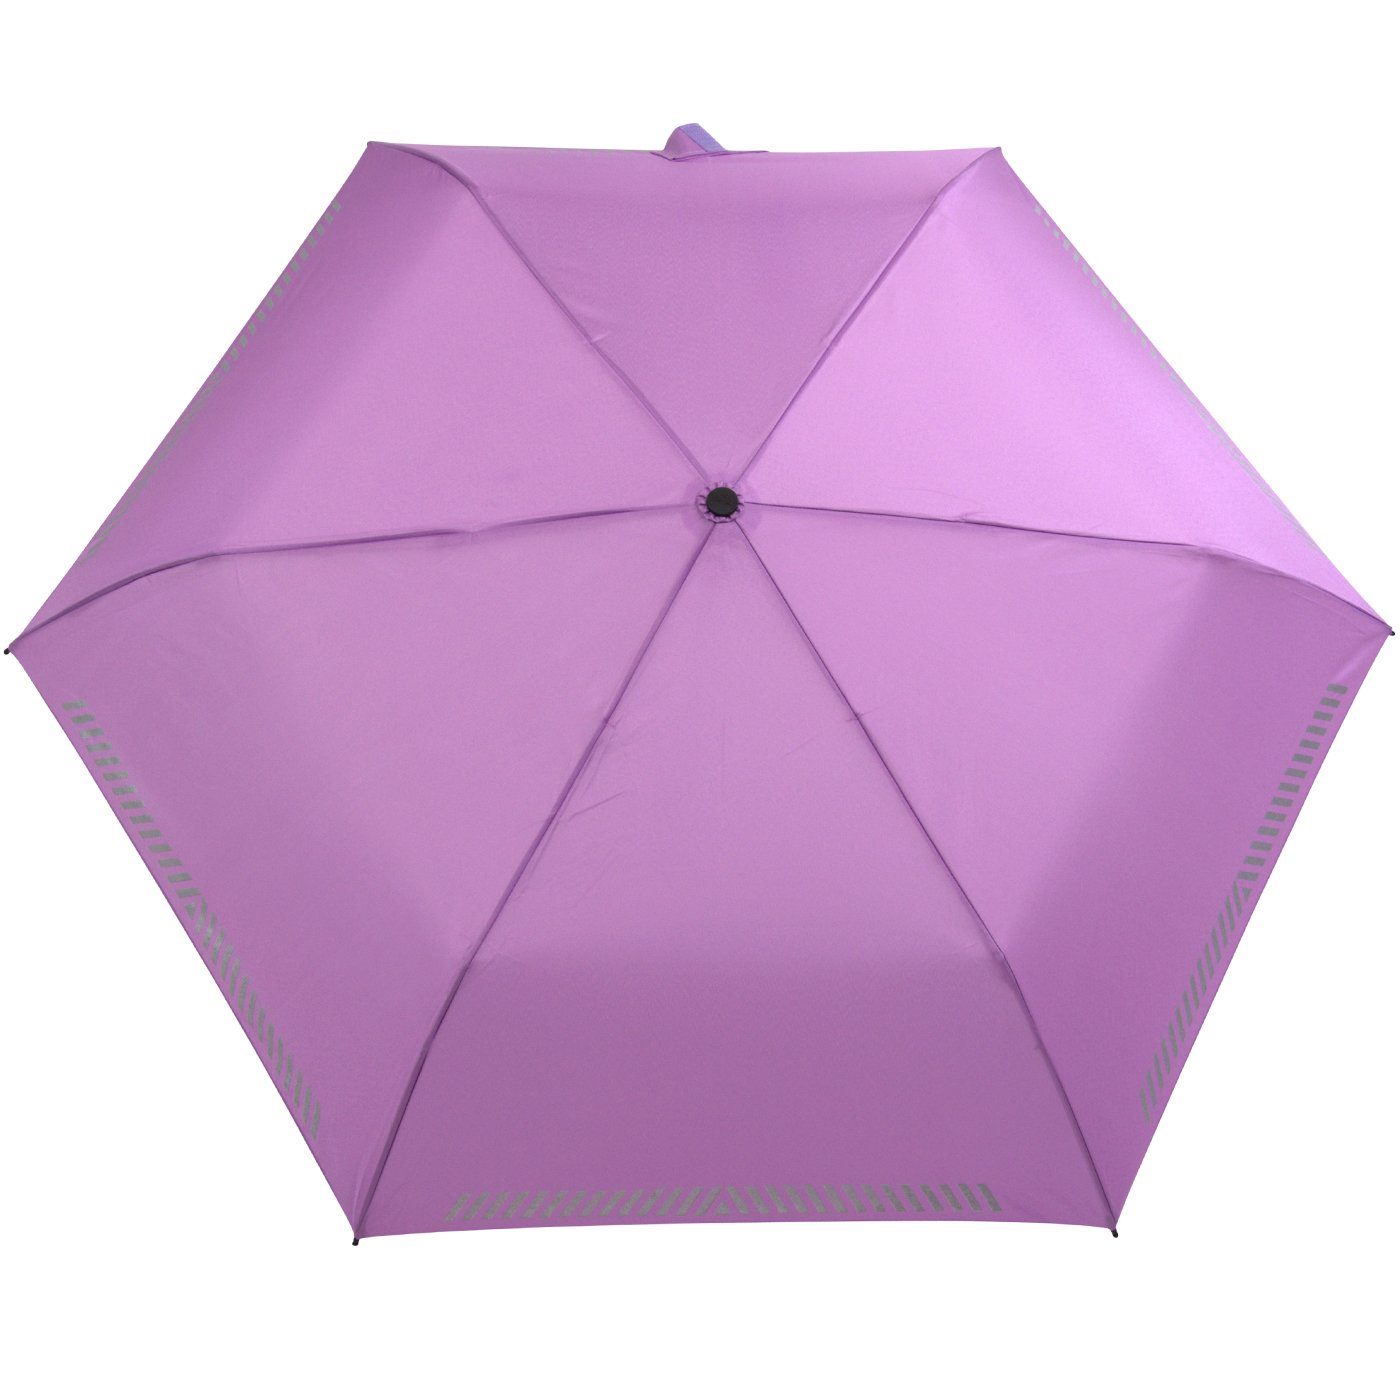 iX-brella Taschenregenschirm mit Kinderschirm hell-lila durch - Sicherheit Reflex-Streifen Auf-Zu-Automatik, reflektierend